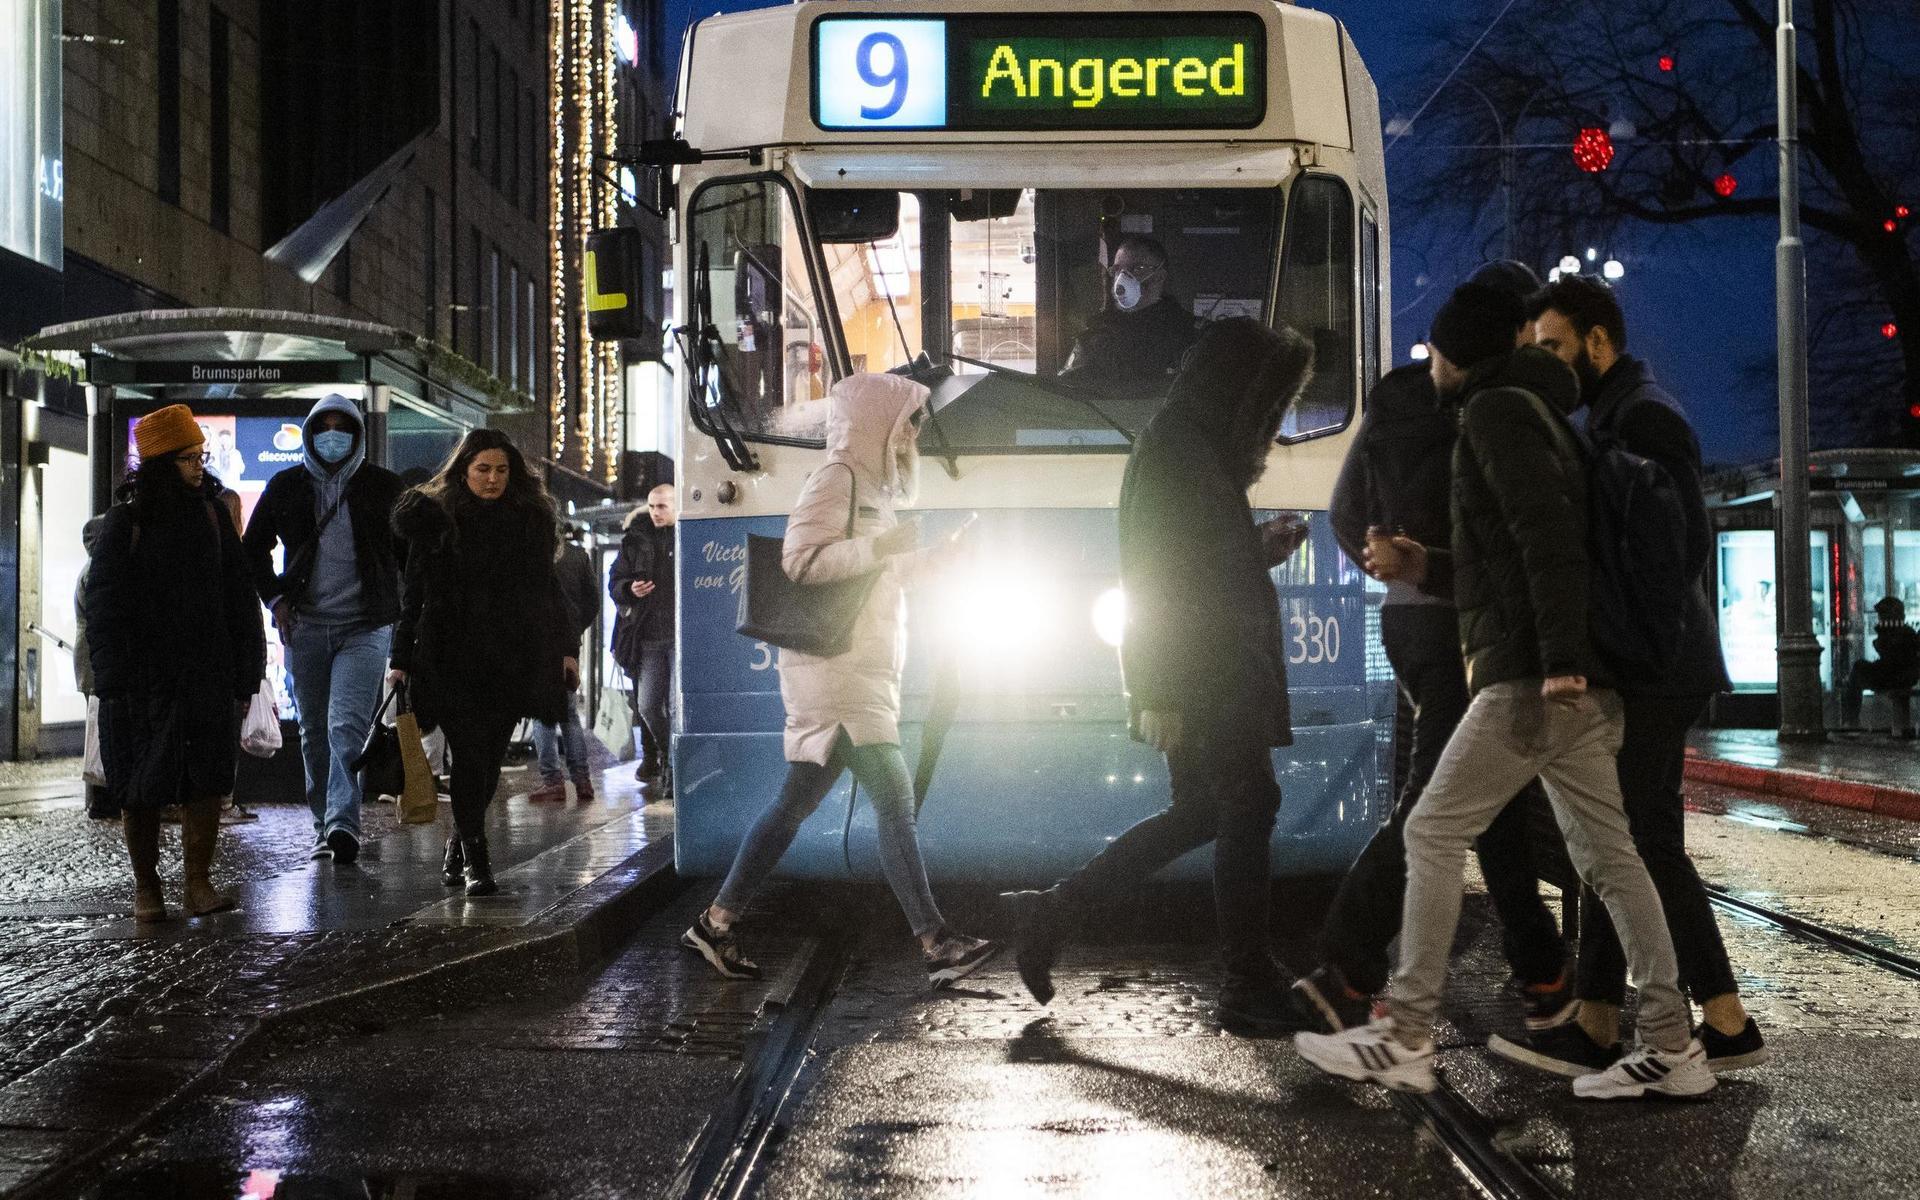 Göteborgarna iförda munskyddet under pandemiåret 2020-2021. Det är inte första gången som smittsamma sjukdomar har präglat den göteborgska stadskärnan. 